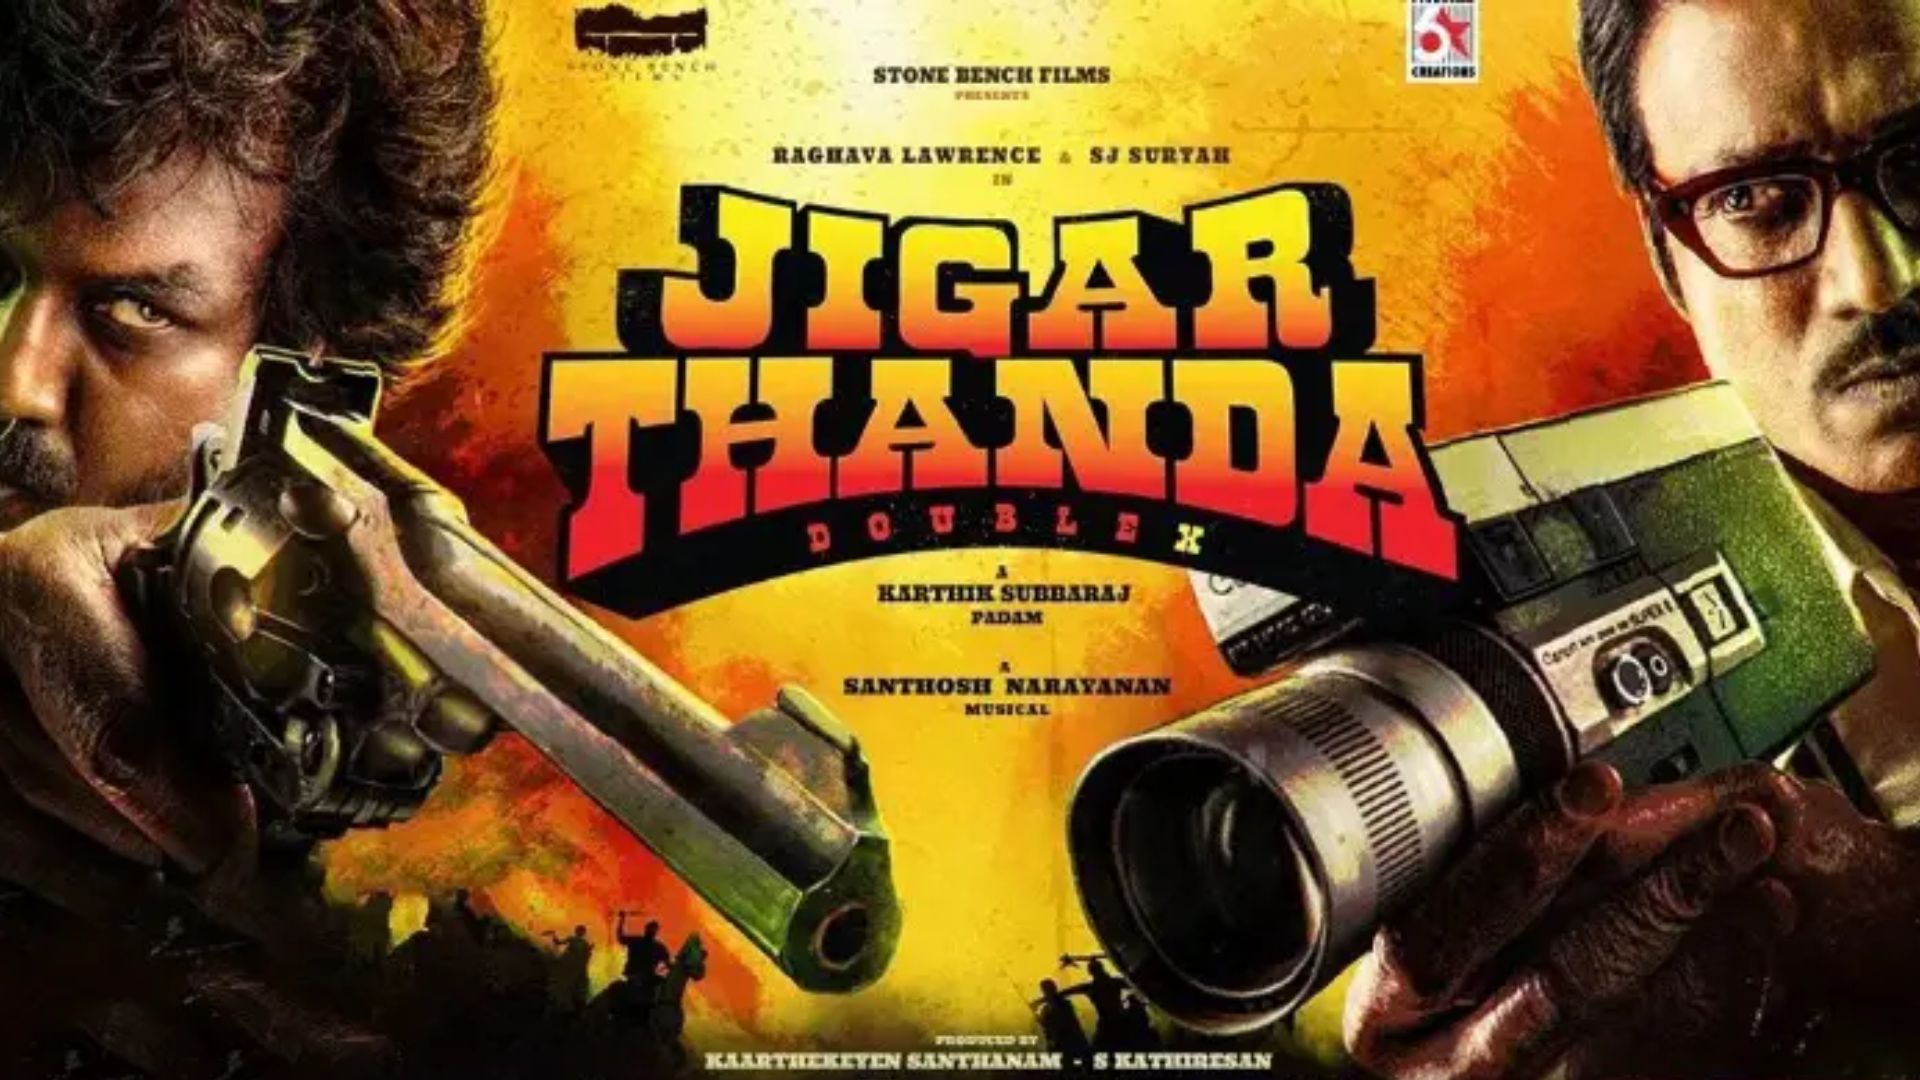 Jigarthanda Double X, SJ Surya